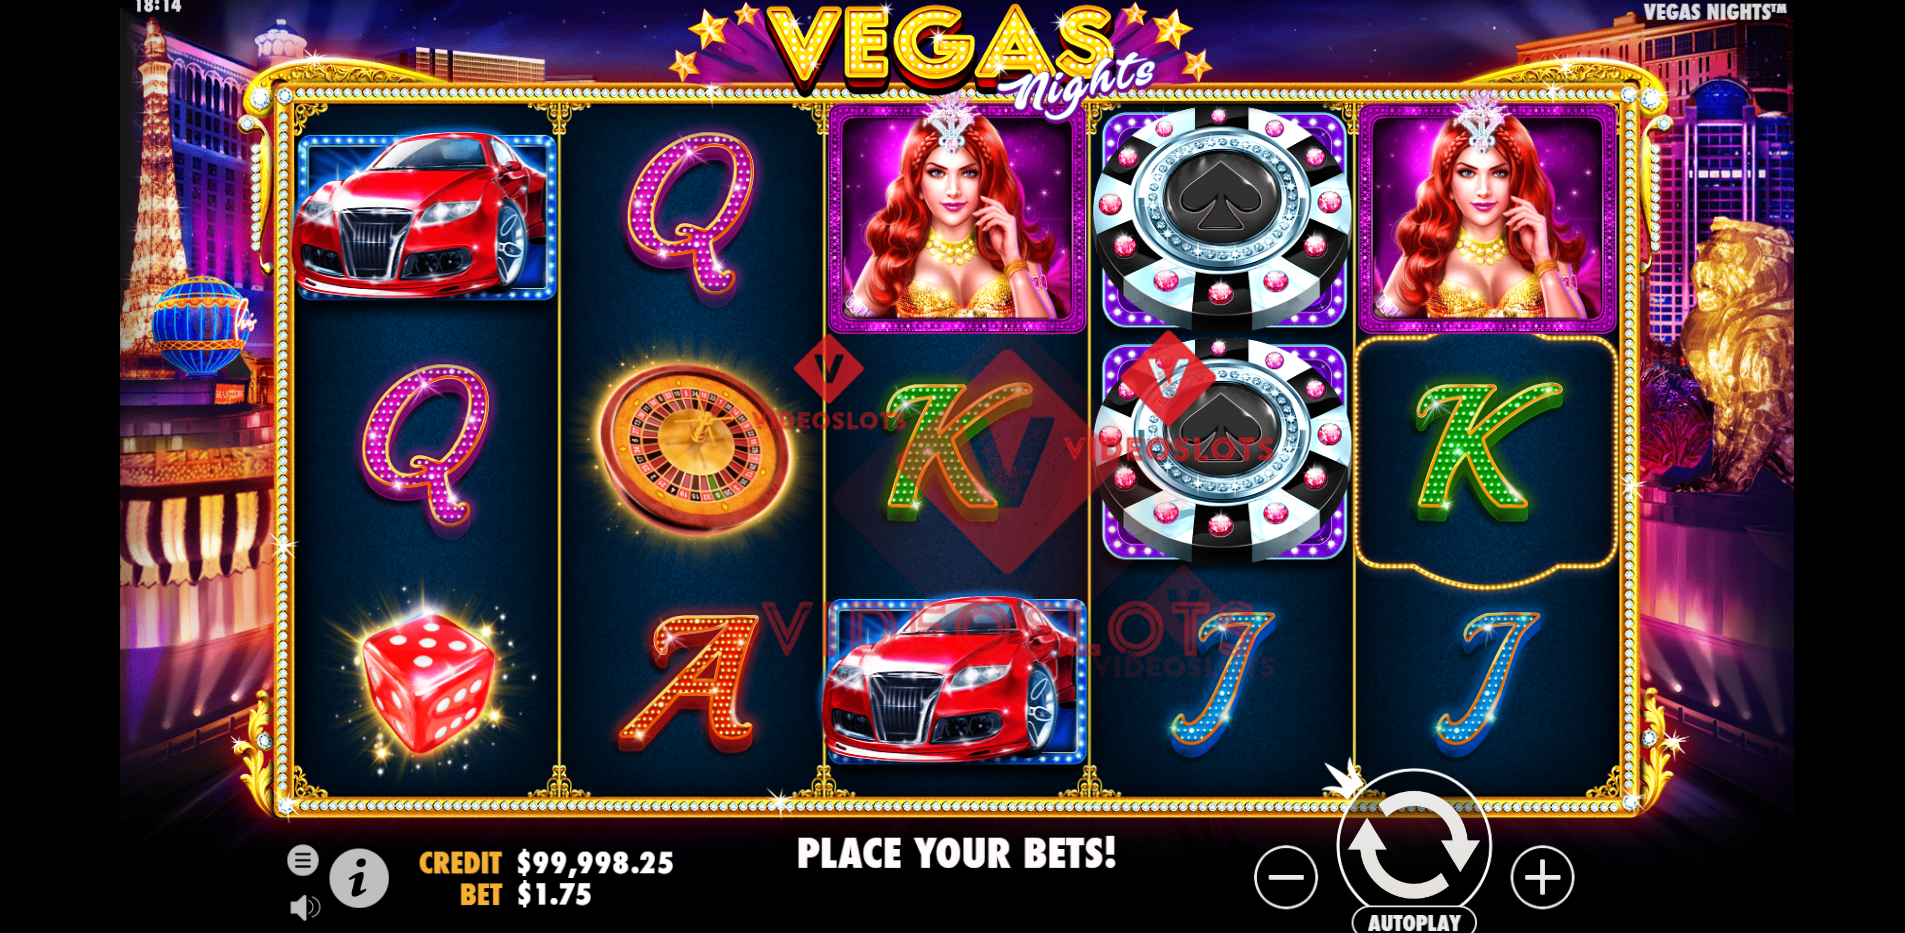 Base Game for Vegas Nights slot by Pragmatic Play